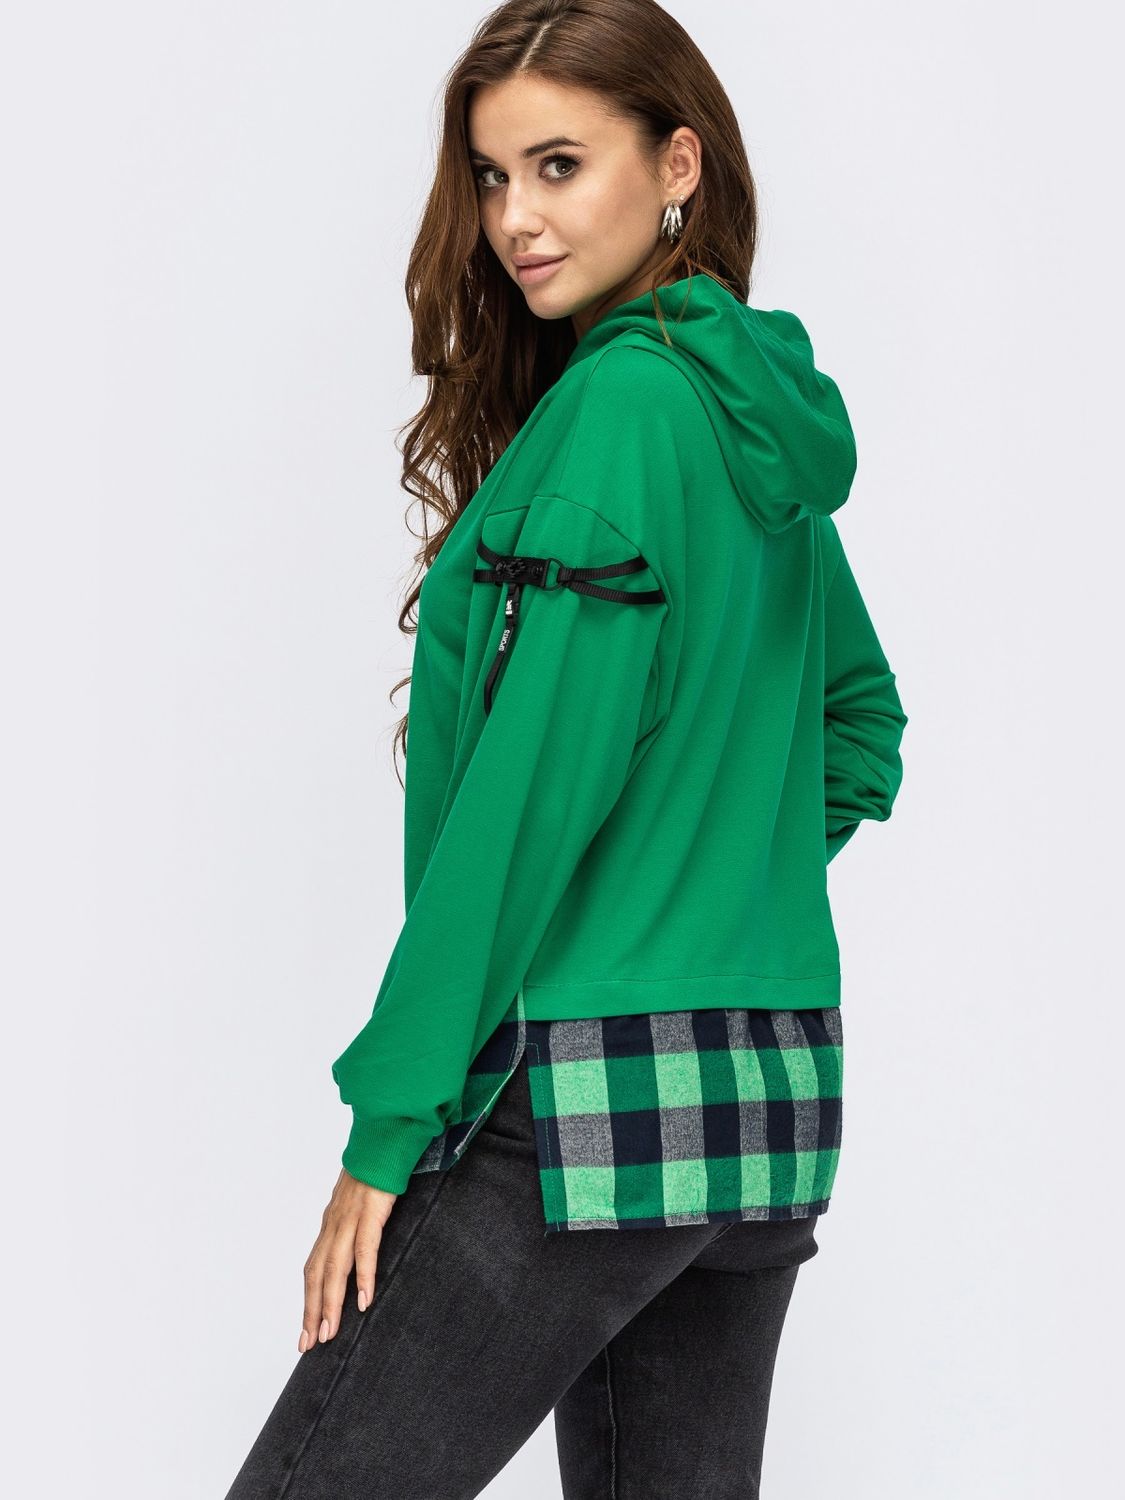 Женский худи с удлиненной спинкой и капюшоном зеленый - фото